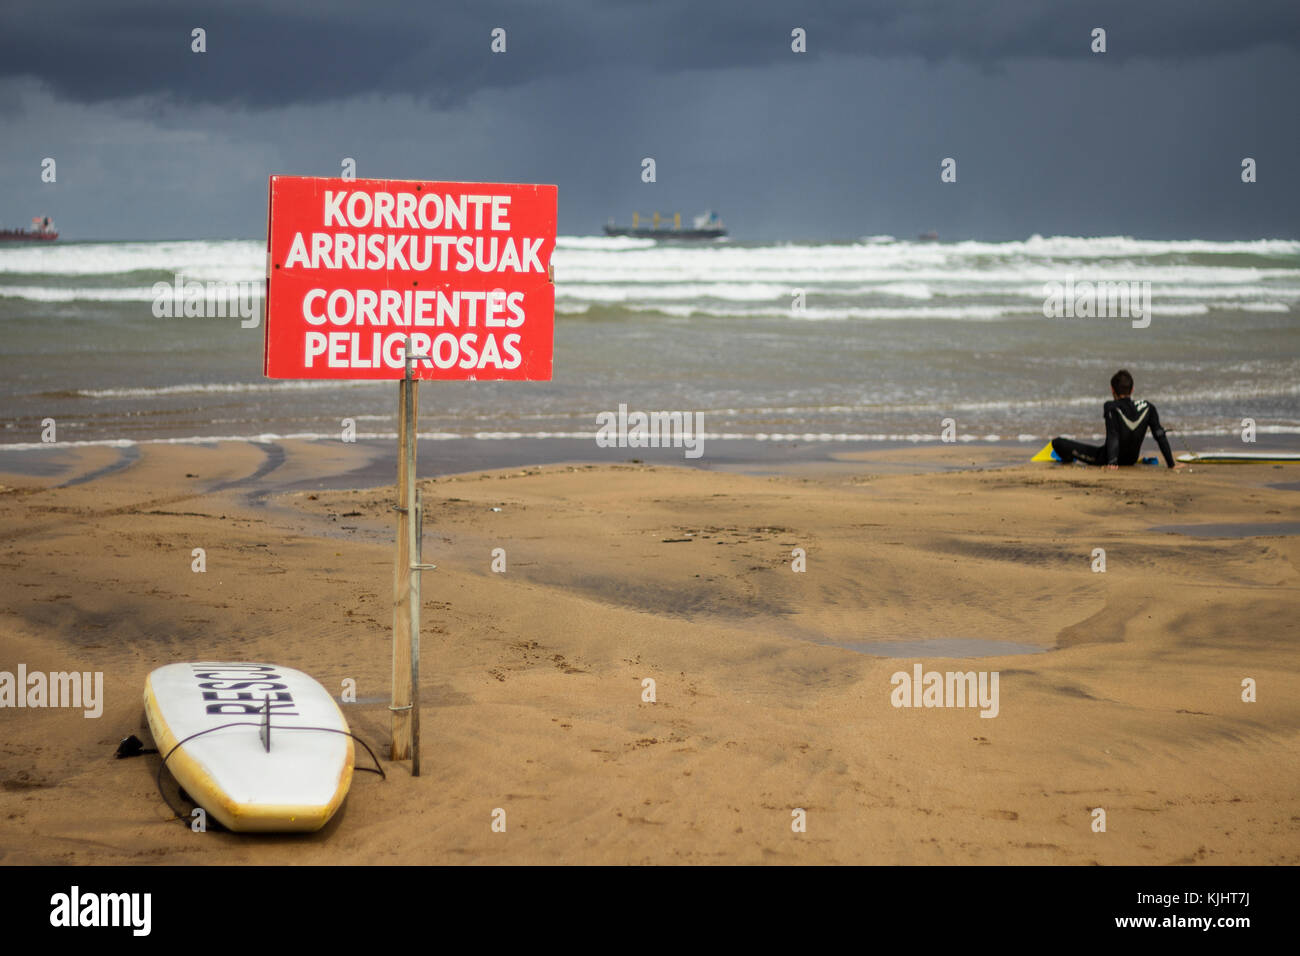 Surfista buscando la mala mar con una tabla de surf y una publicidad de corrientes peligrosas en una playa del país basue en españa Foto de stock